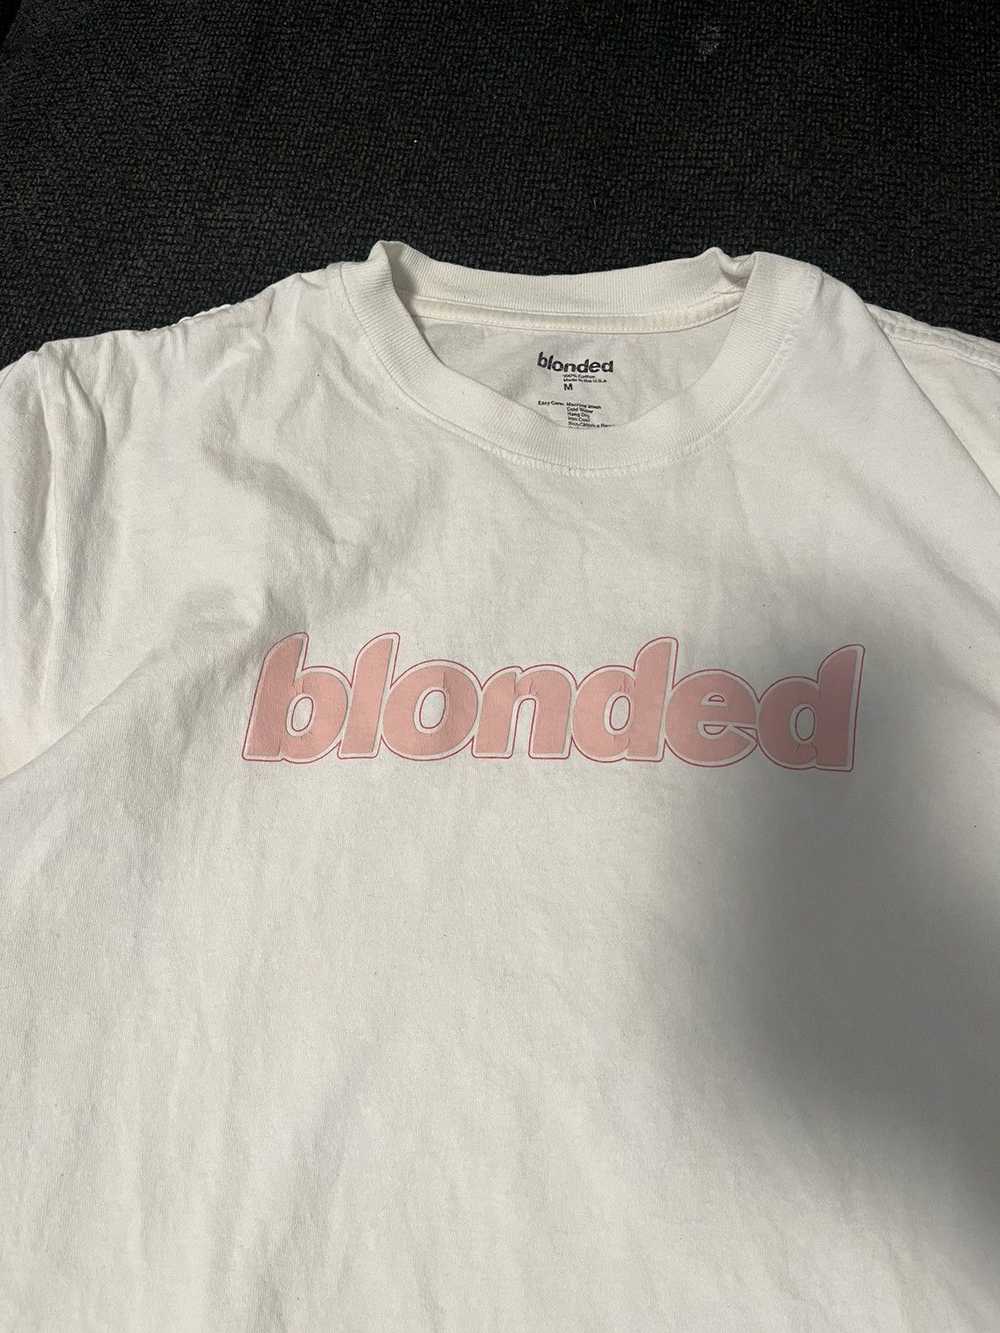 Frank Ocean Blonded tshirt - image 3